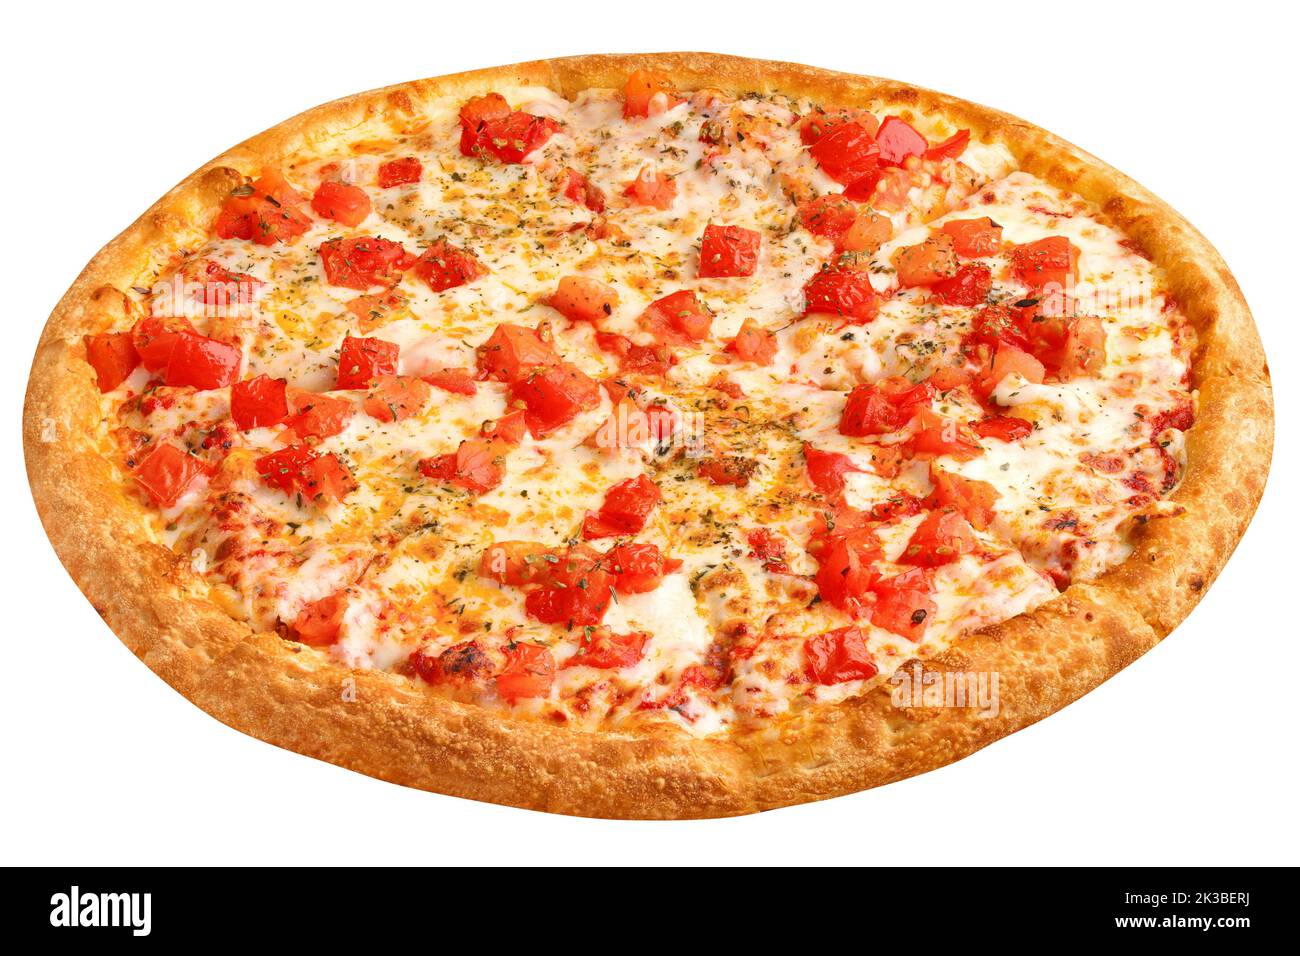 сколько калорий в одном куске пицца маргарита фото 109